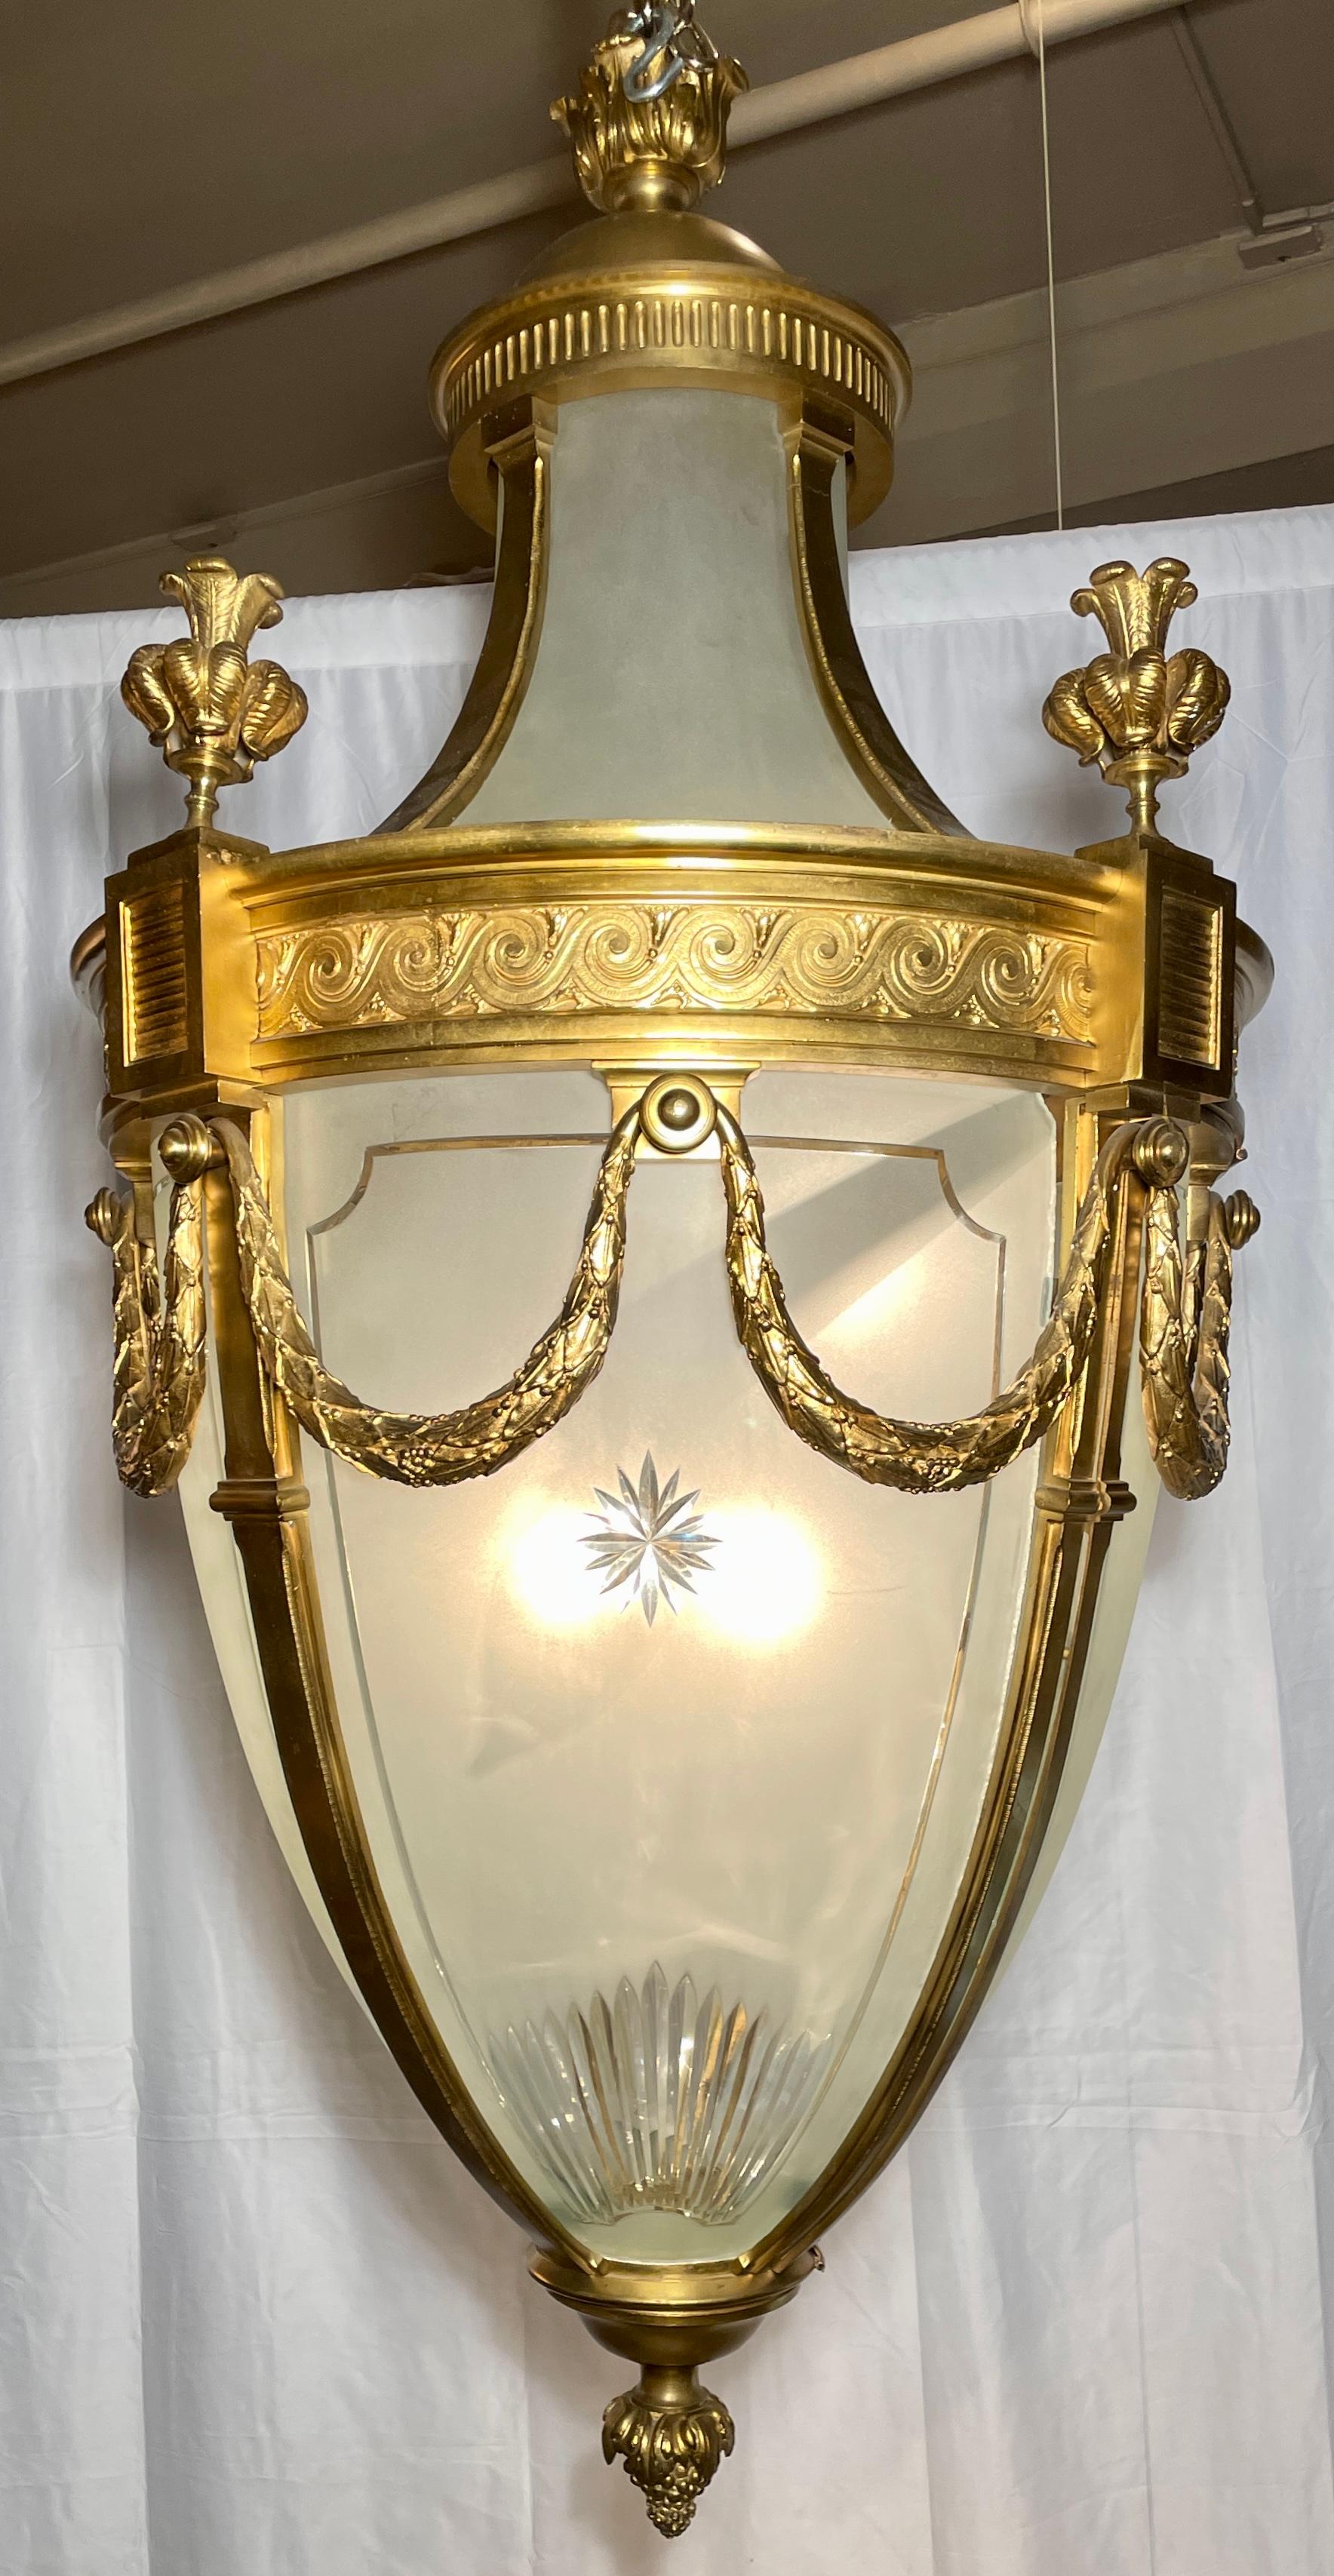 Lanterne en bronze doré et verre gravé de la Belle Époque, Circa 1890.
Magnifique design avec des sculptures complexes en bronze doré et à la roue. 